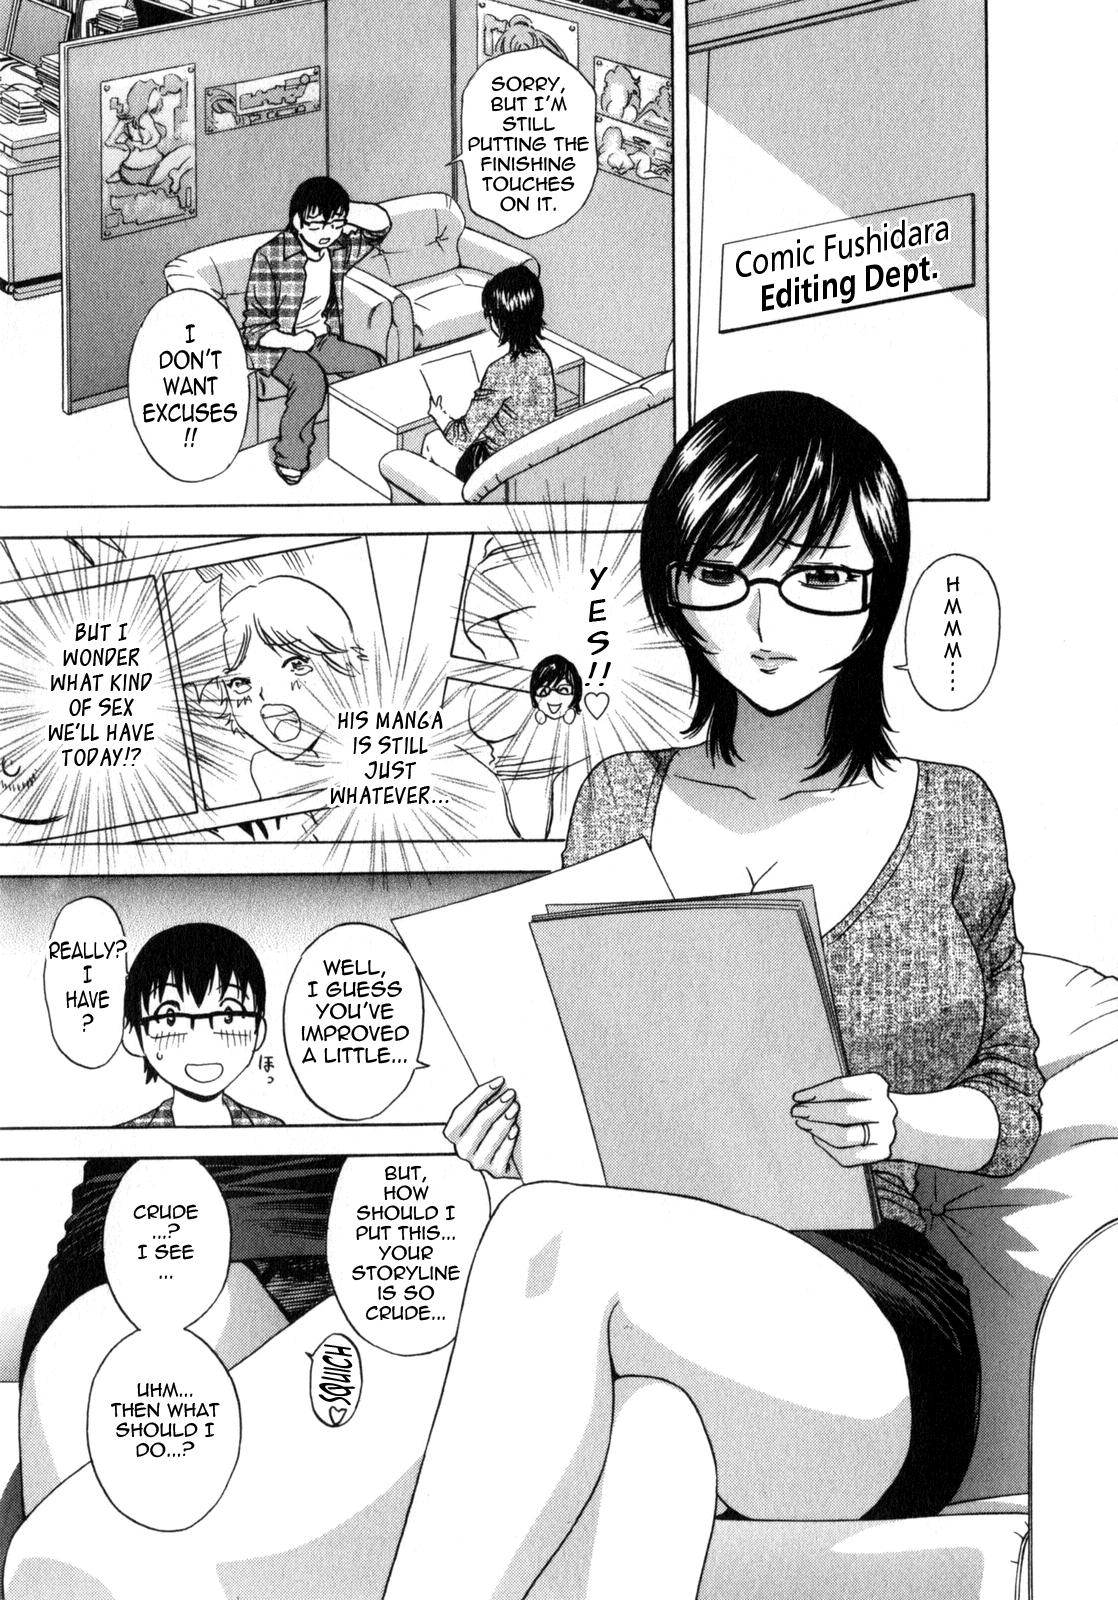 Manga no youna Hitozuma to no Hibi - Days with Married Women such as Comics. 157